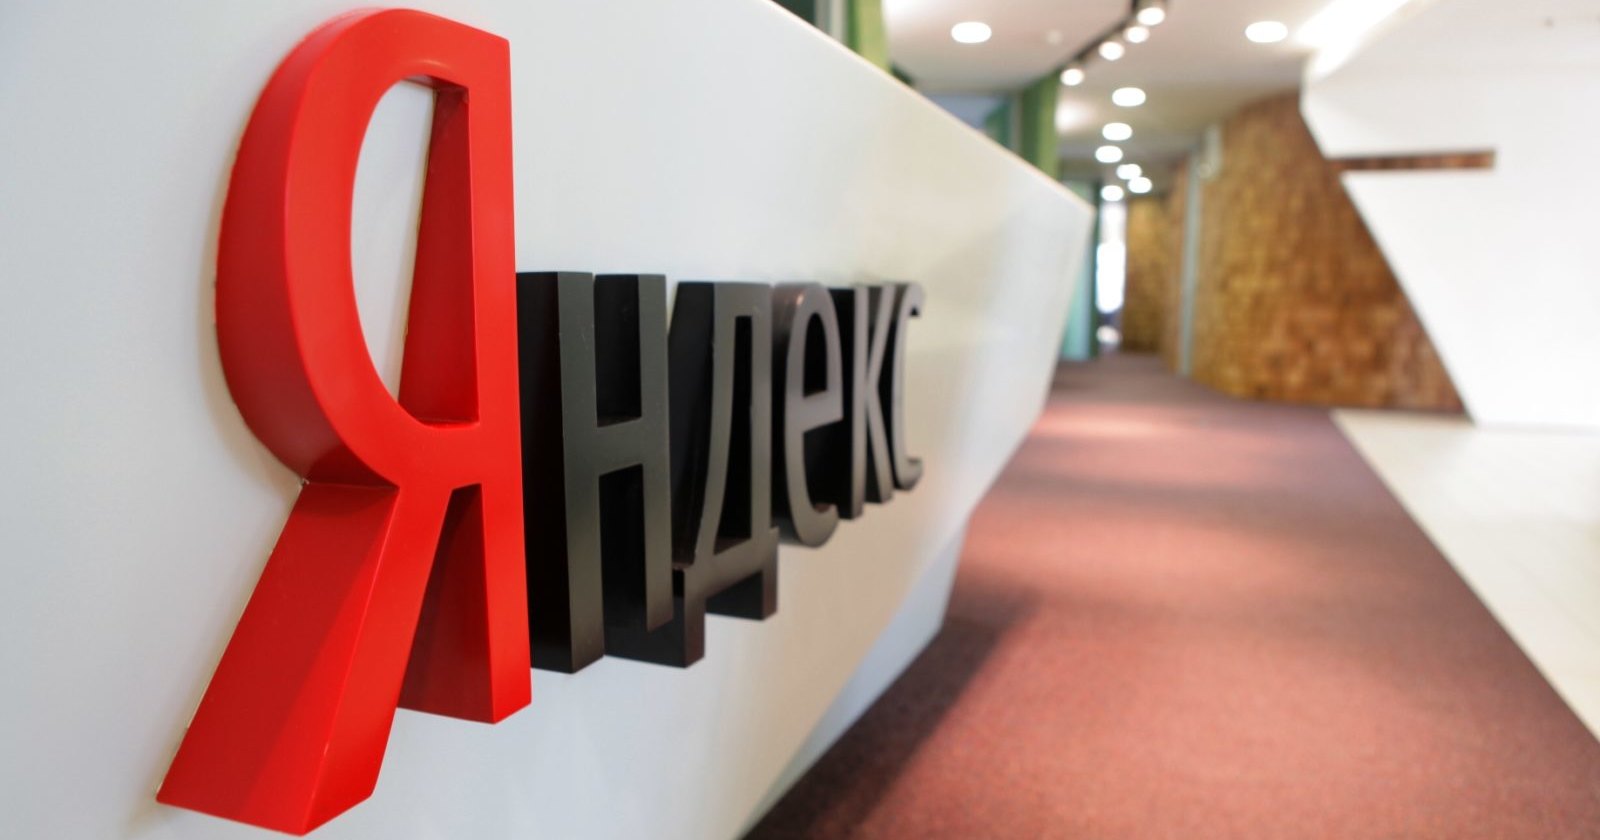 “Яндекс» попытается выполнить «закон Яровой» без ущерба для пользователей